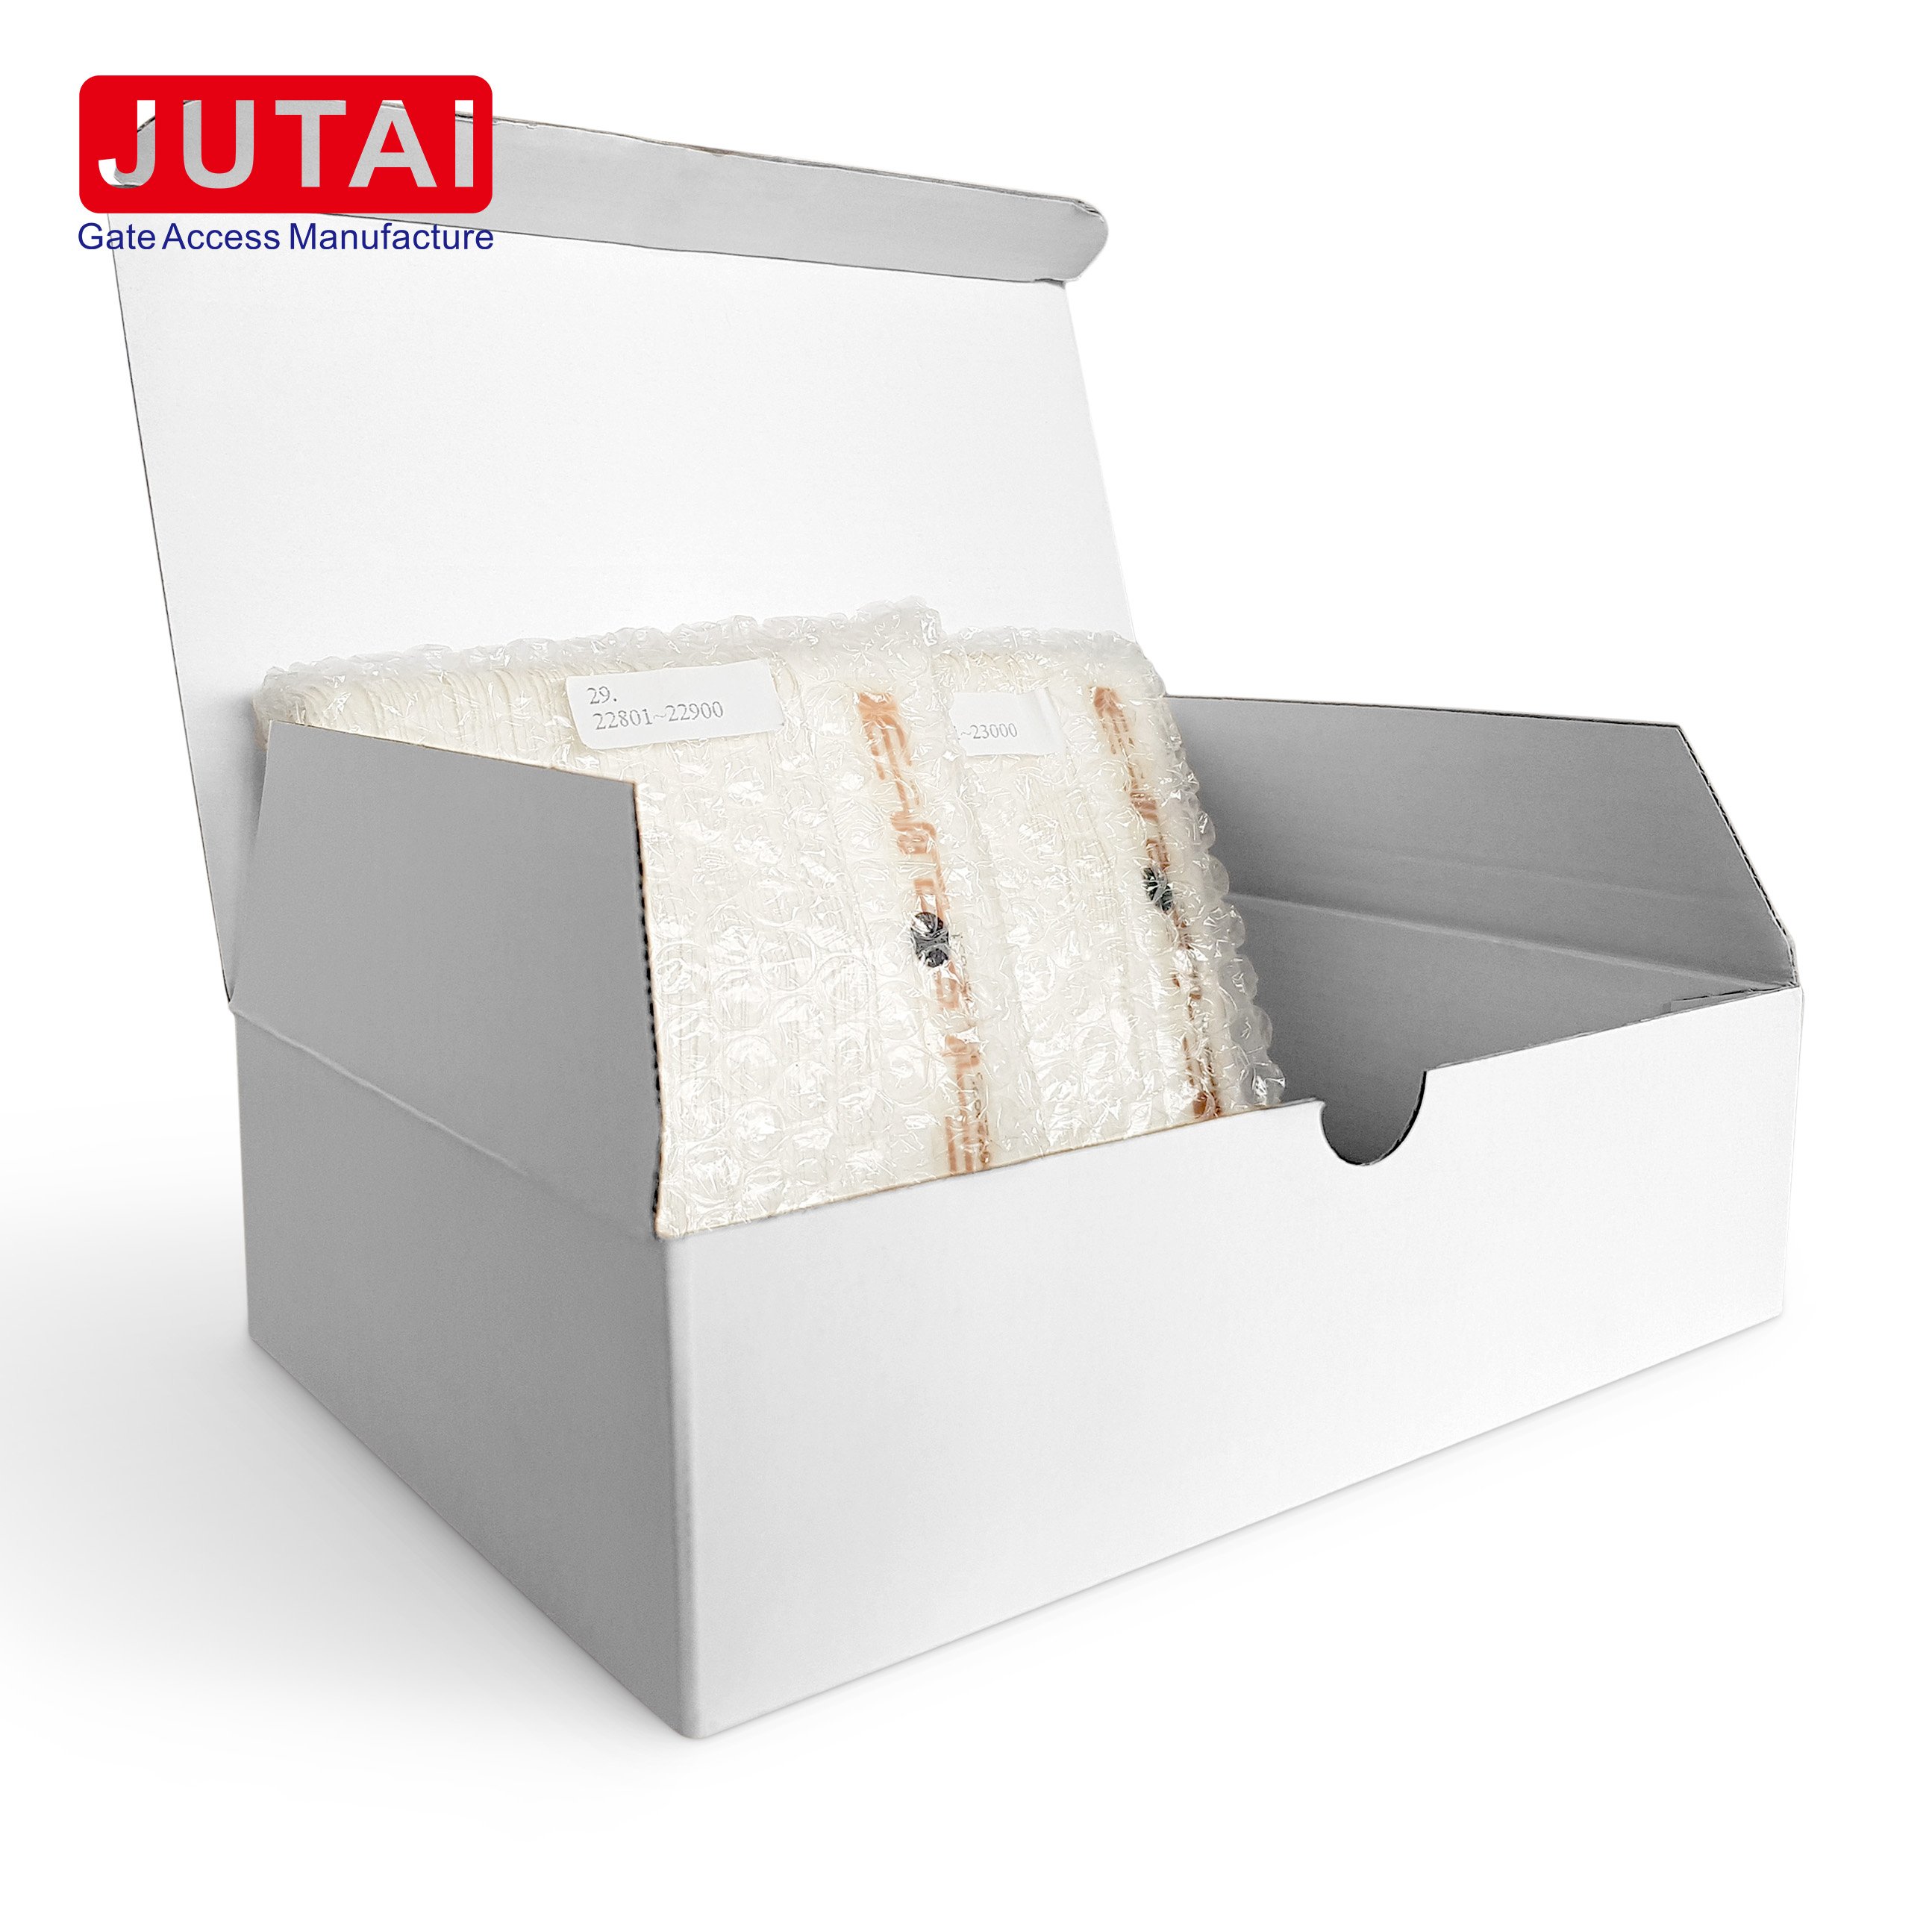 Etiqueta UHF de largo alcance tipo impermeable JUTAI / adhesivo especial utilizado para el sistema de control de acceso de la puerta